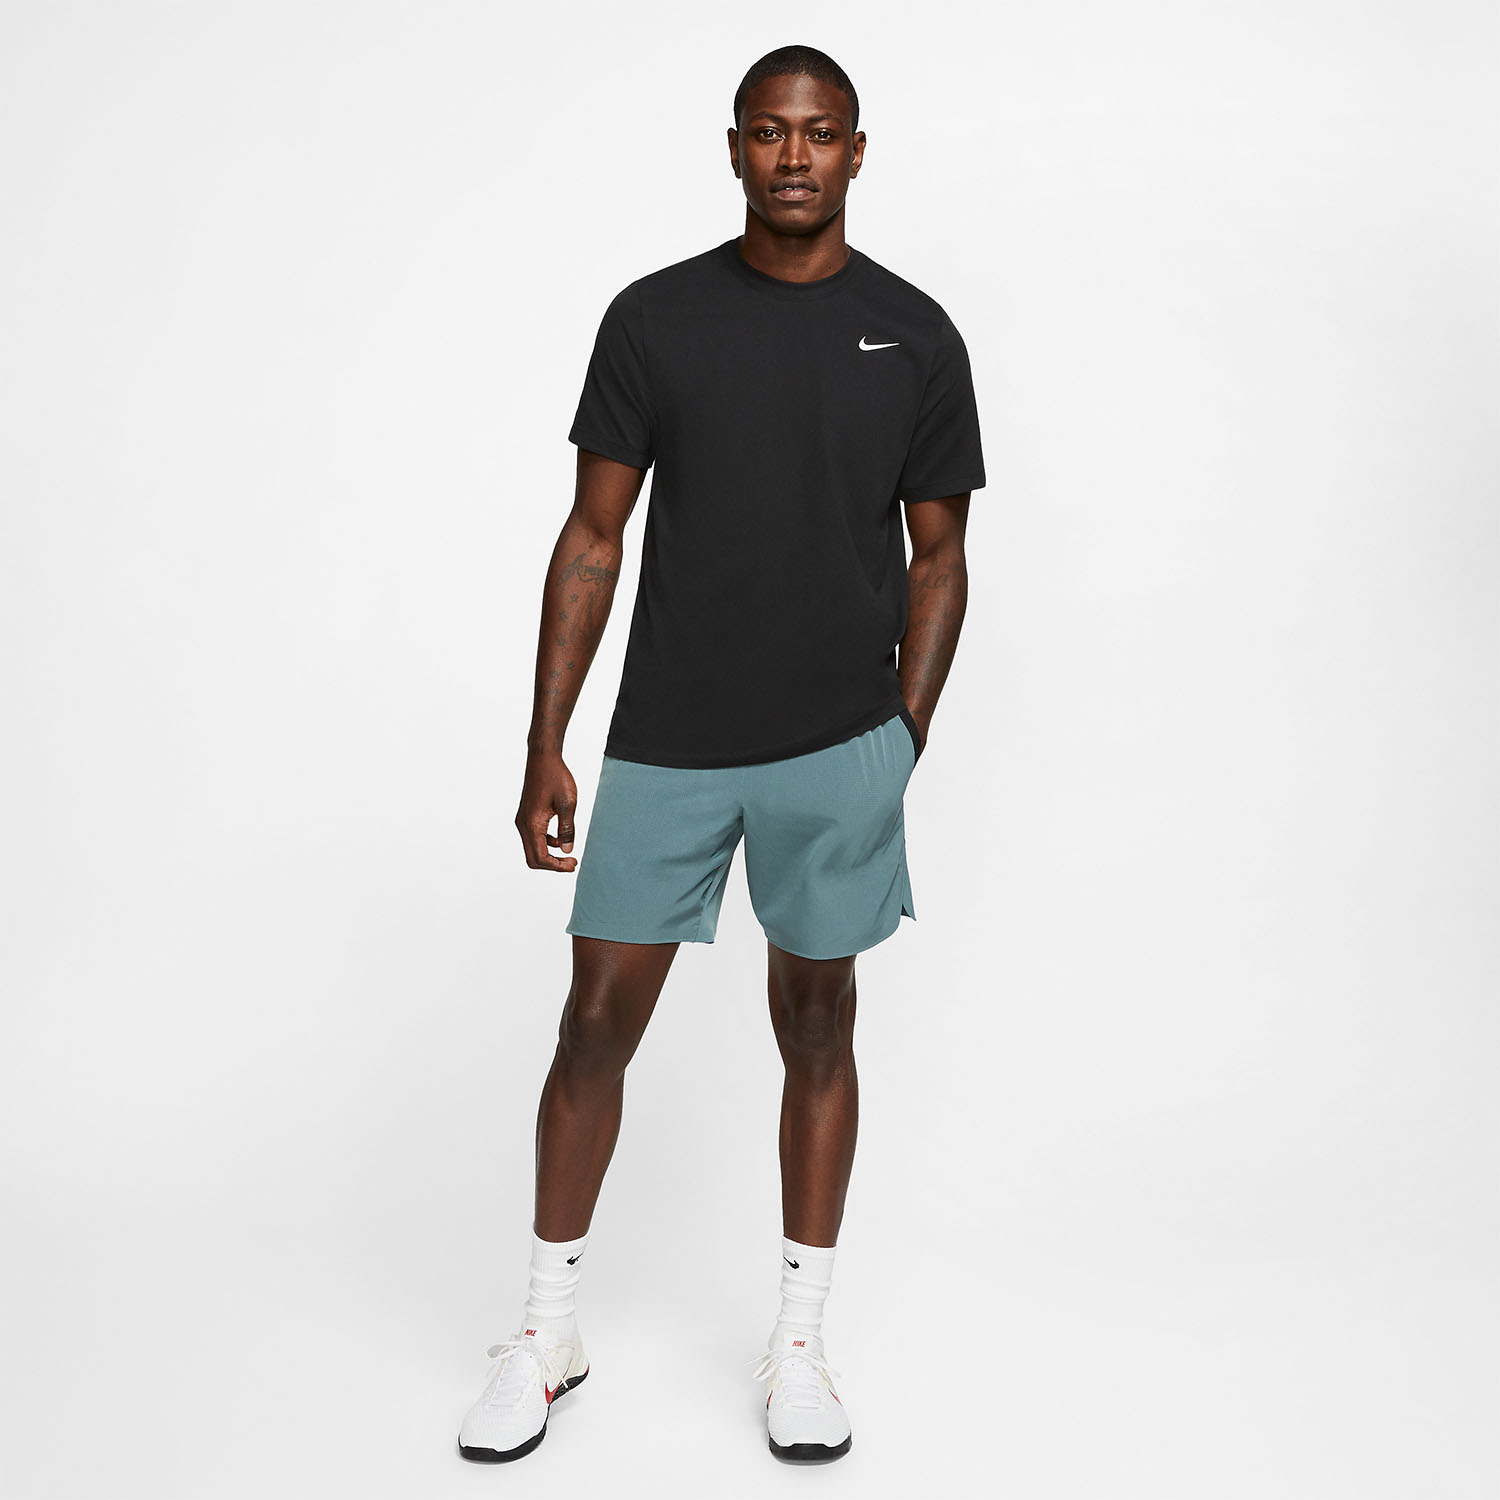 Nike Dri-FIT Swoosh Logo T-Shirt - Black/White